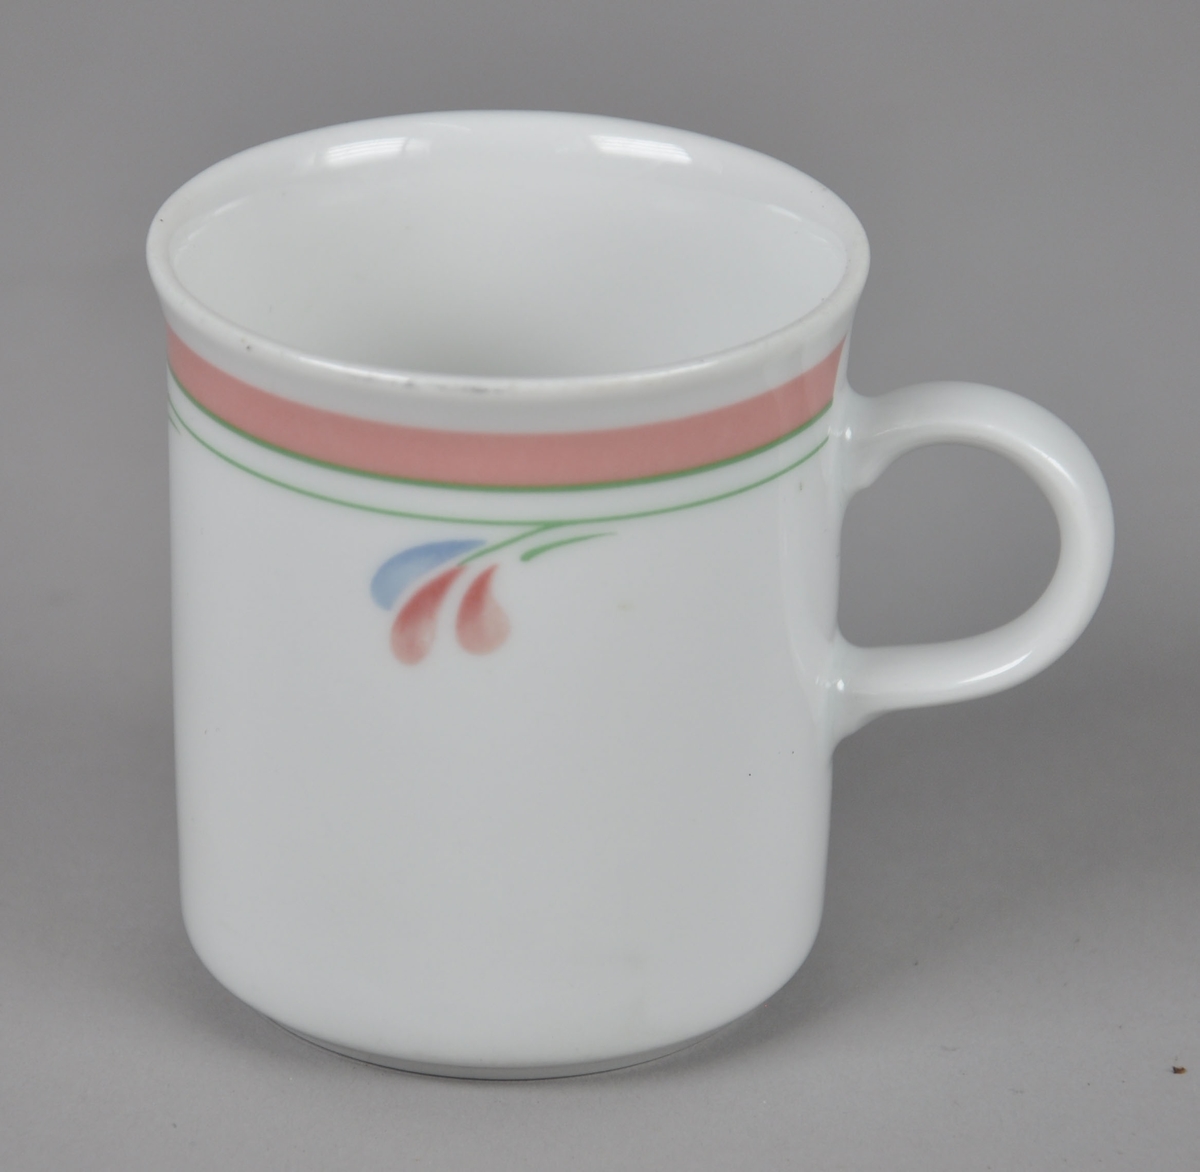 Kaffekopp av glassert keramikk, med hank. Koppen har malt dekor på utsiden med motiv av linjer og blader.